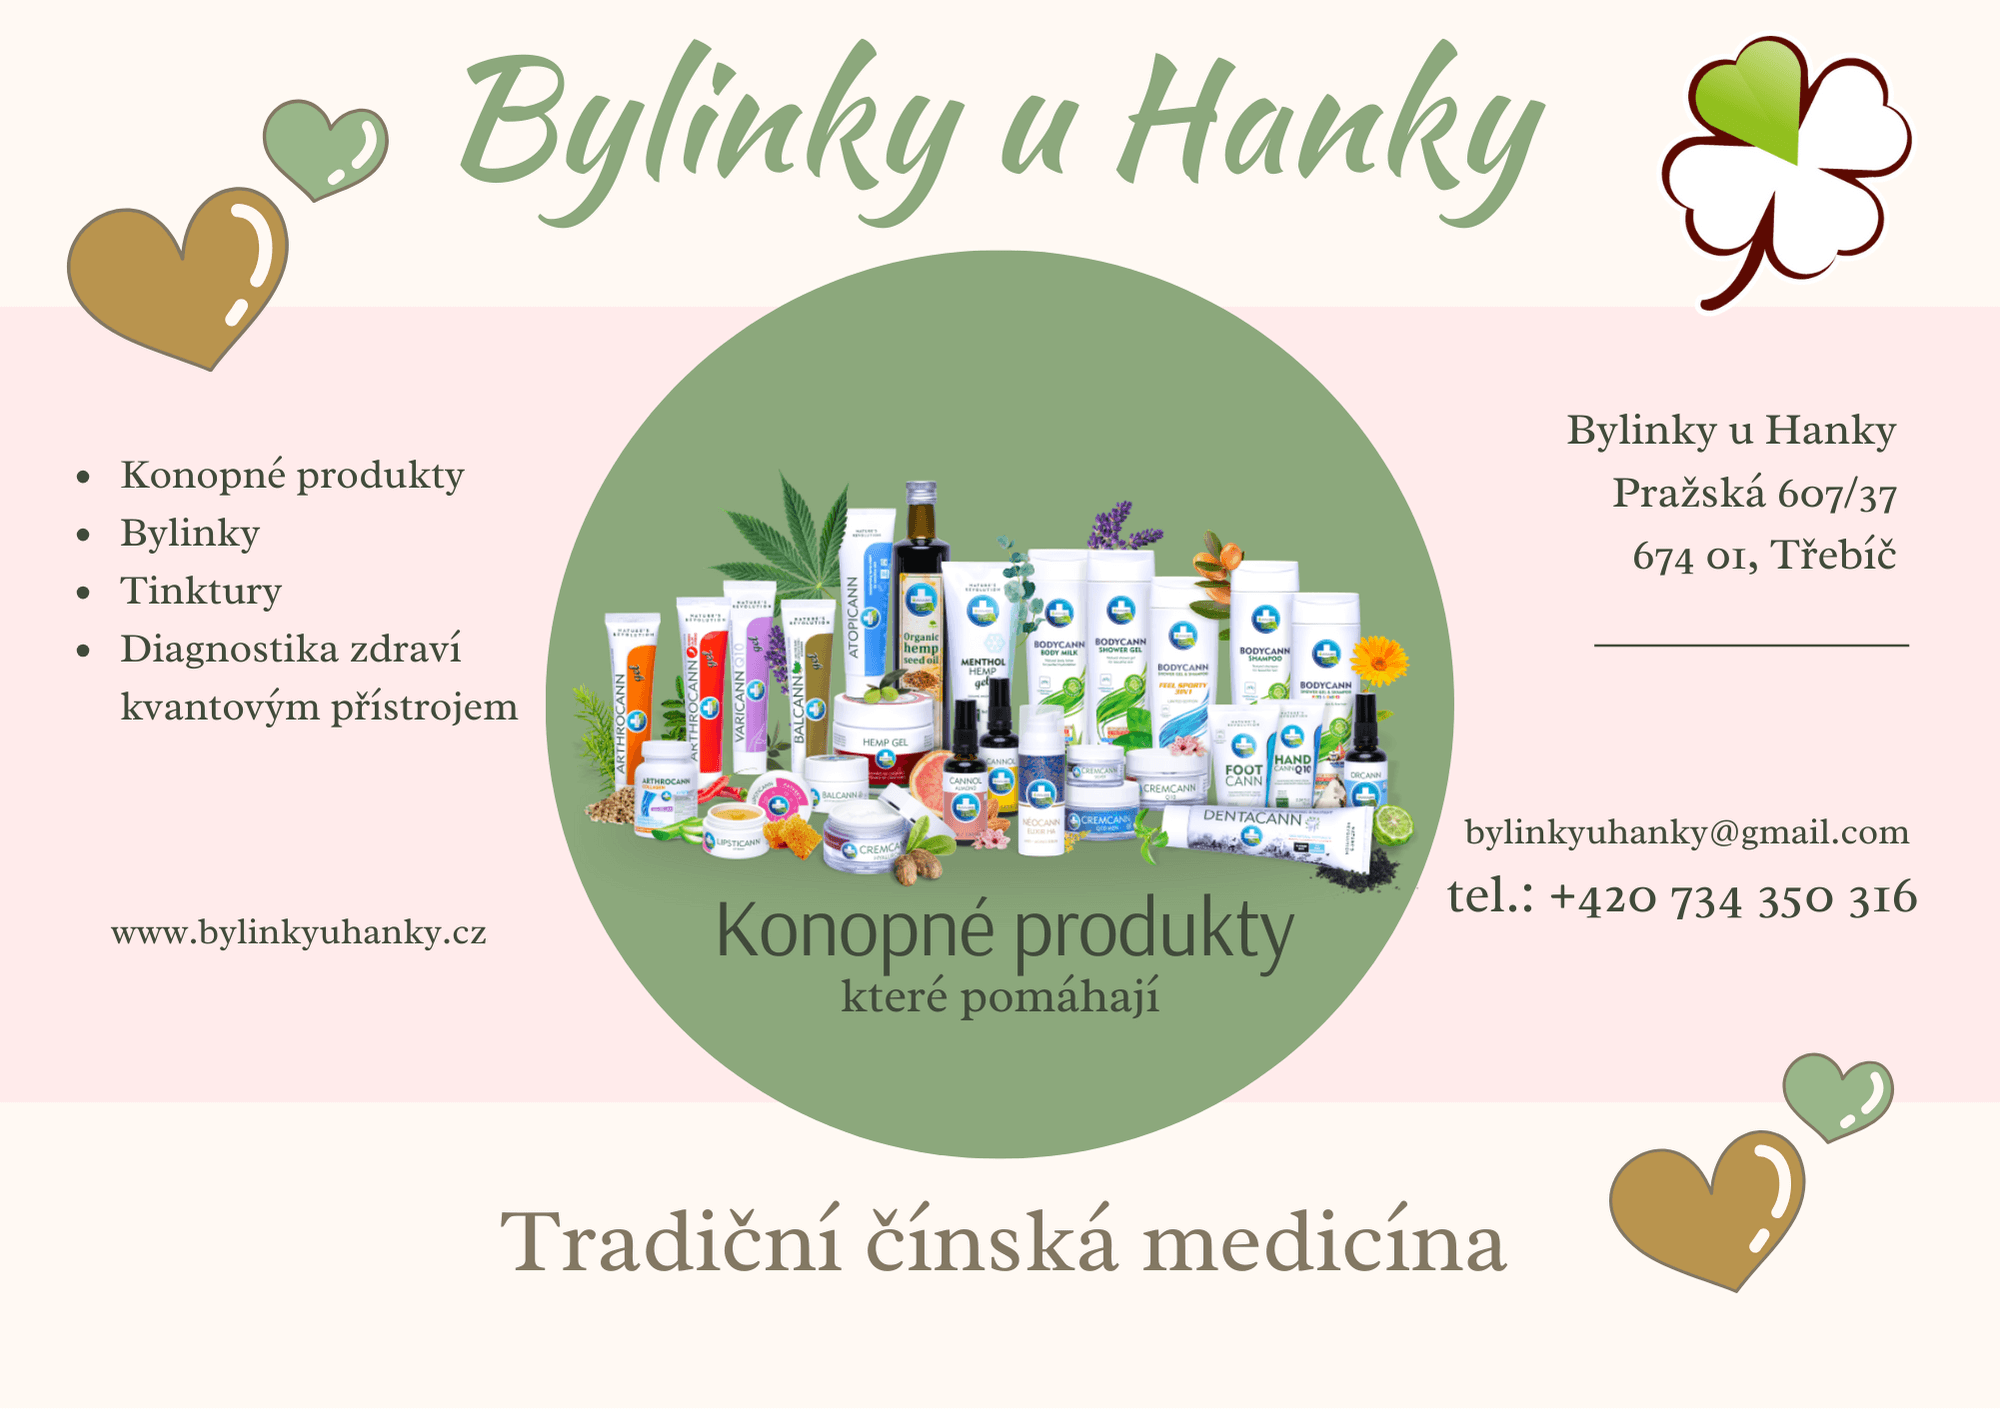 www.bylinkyuhanky.cz